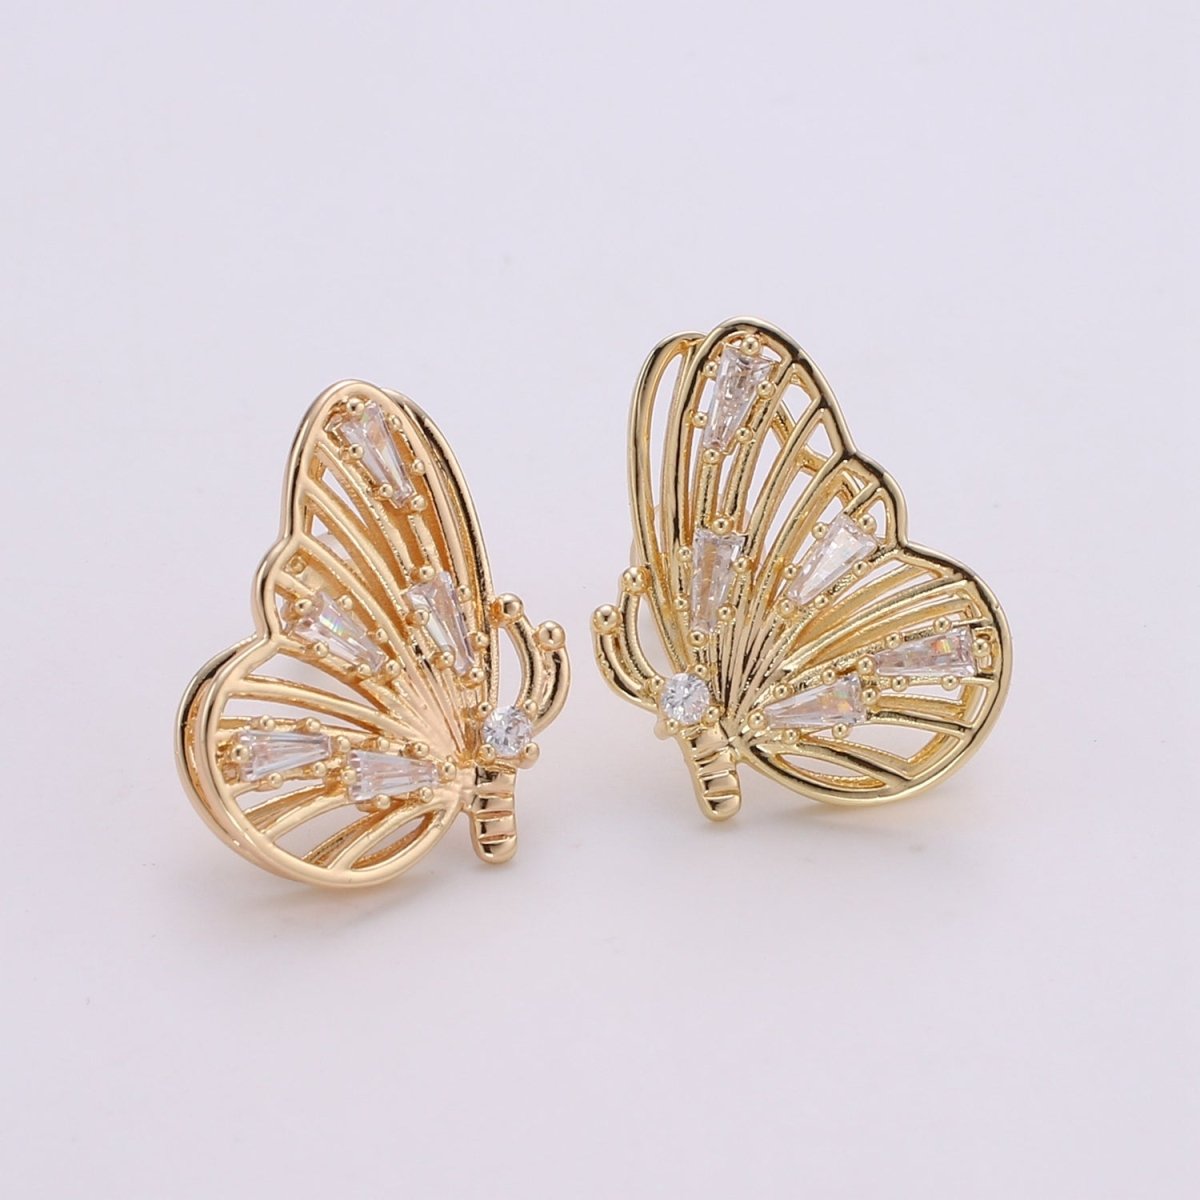 Gold Butterfly Earrings • butterfly stud earrings • Bold earrings • Statement earrings • Big stud earrings • gold stud earrings Q-349 - DLUXCA